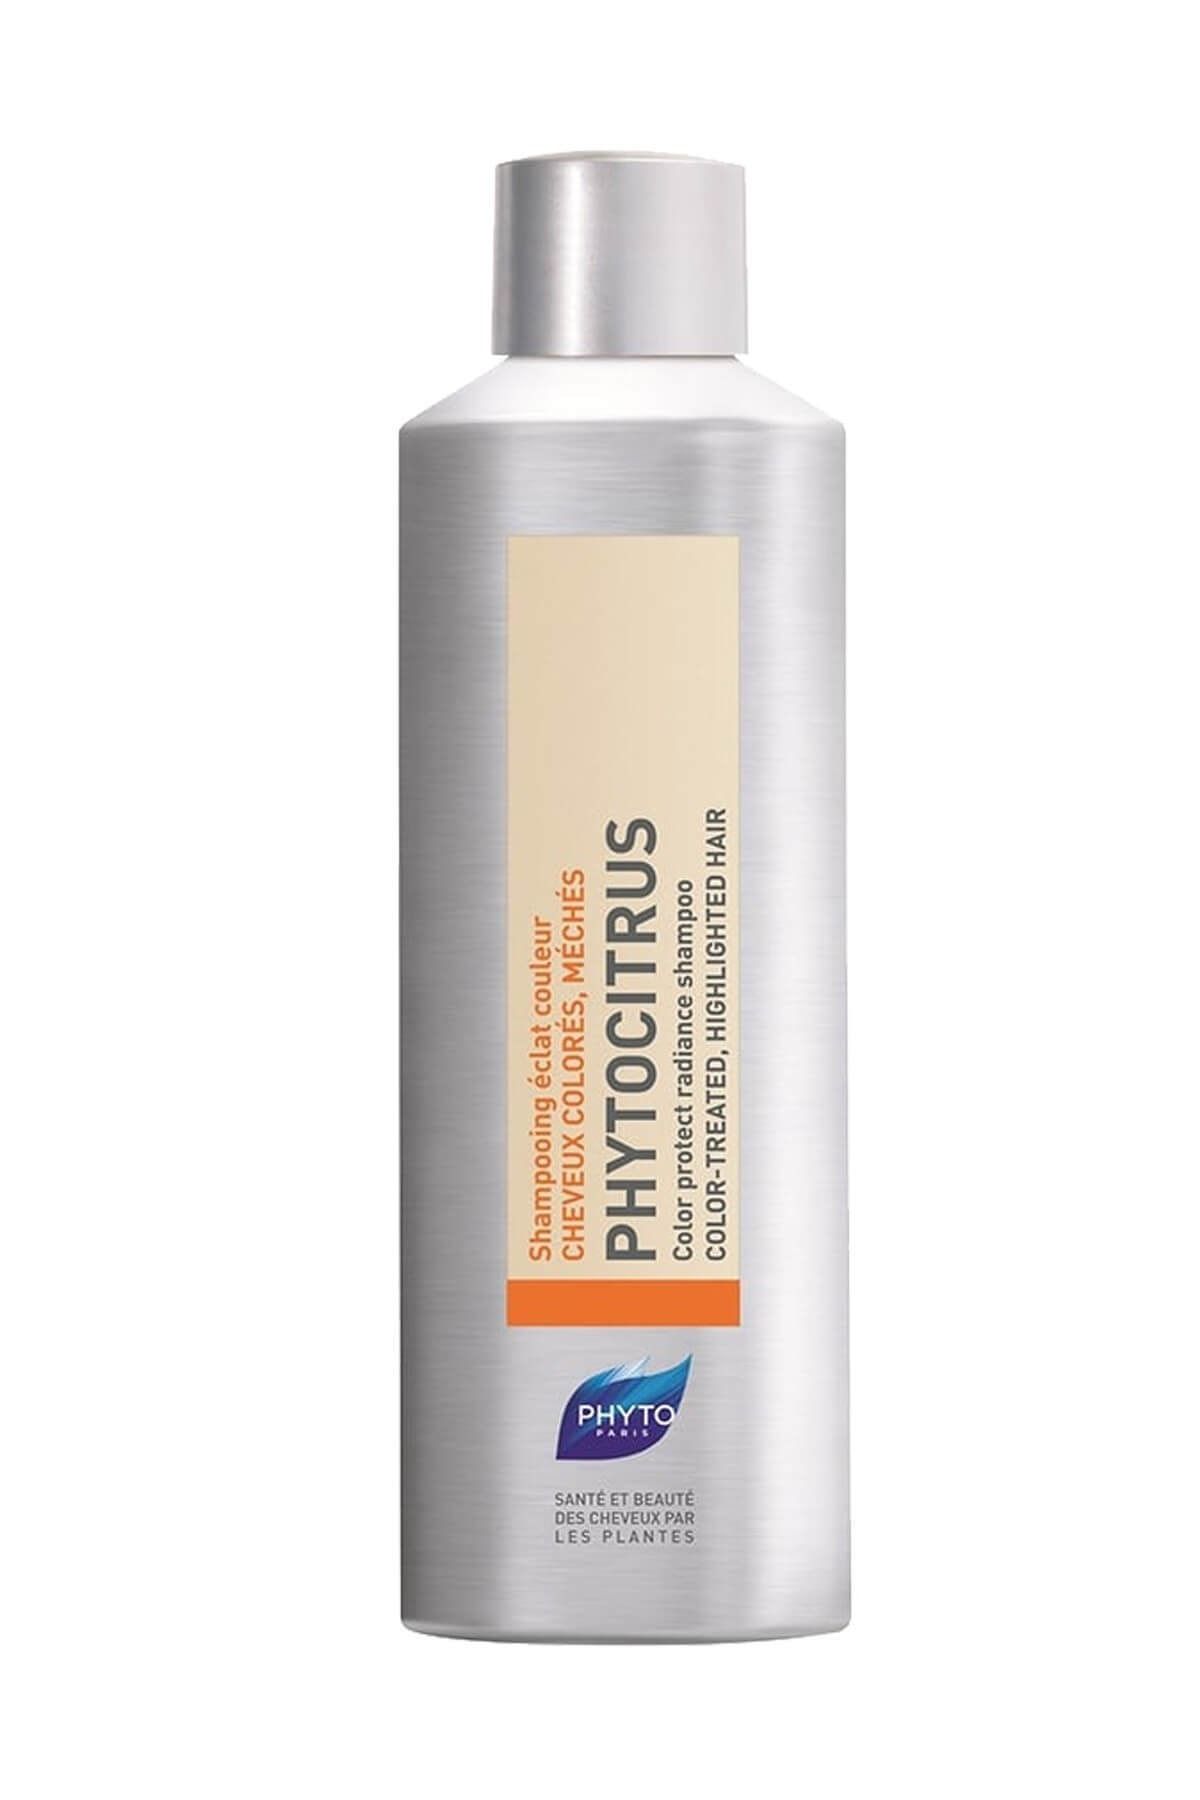 Phyto Boyalı Saçlar için Renk Koruyucu Şampuan - Phytocitrus Shampoo 200 ml 618059103797